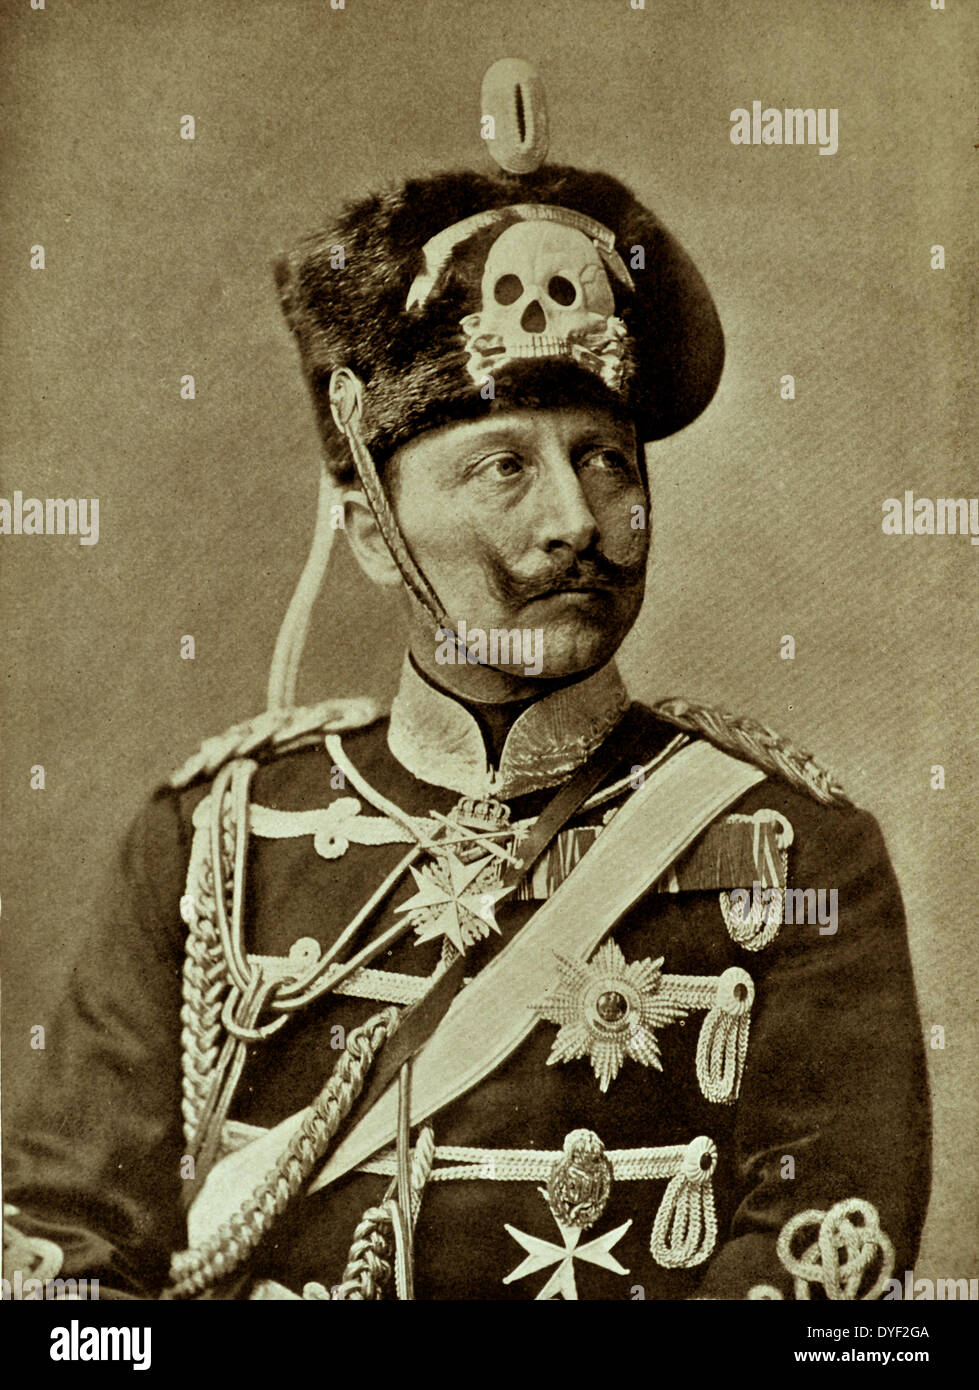 Wilhelm II. oder William II (Friedrich Wilhelm von Preußen); vom 27. Januar 1859 - vom 4. Juni 1941) wurde der letzte deutsche Kaiser (Kaiser), König von Preußen, dem Deutschen Reich und dem Königreich Preußen, vom 15. Juni 1888 bis 9. November 1918. Stockfoto